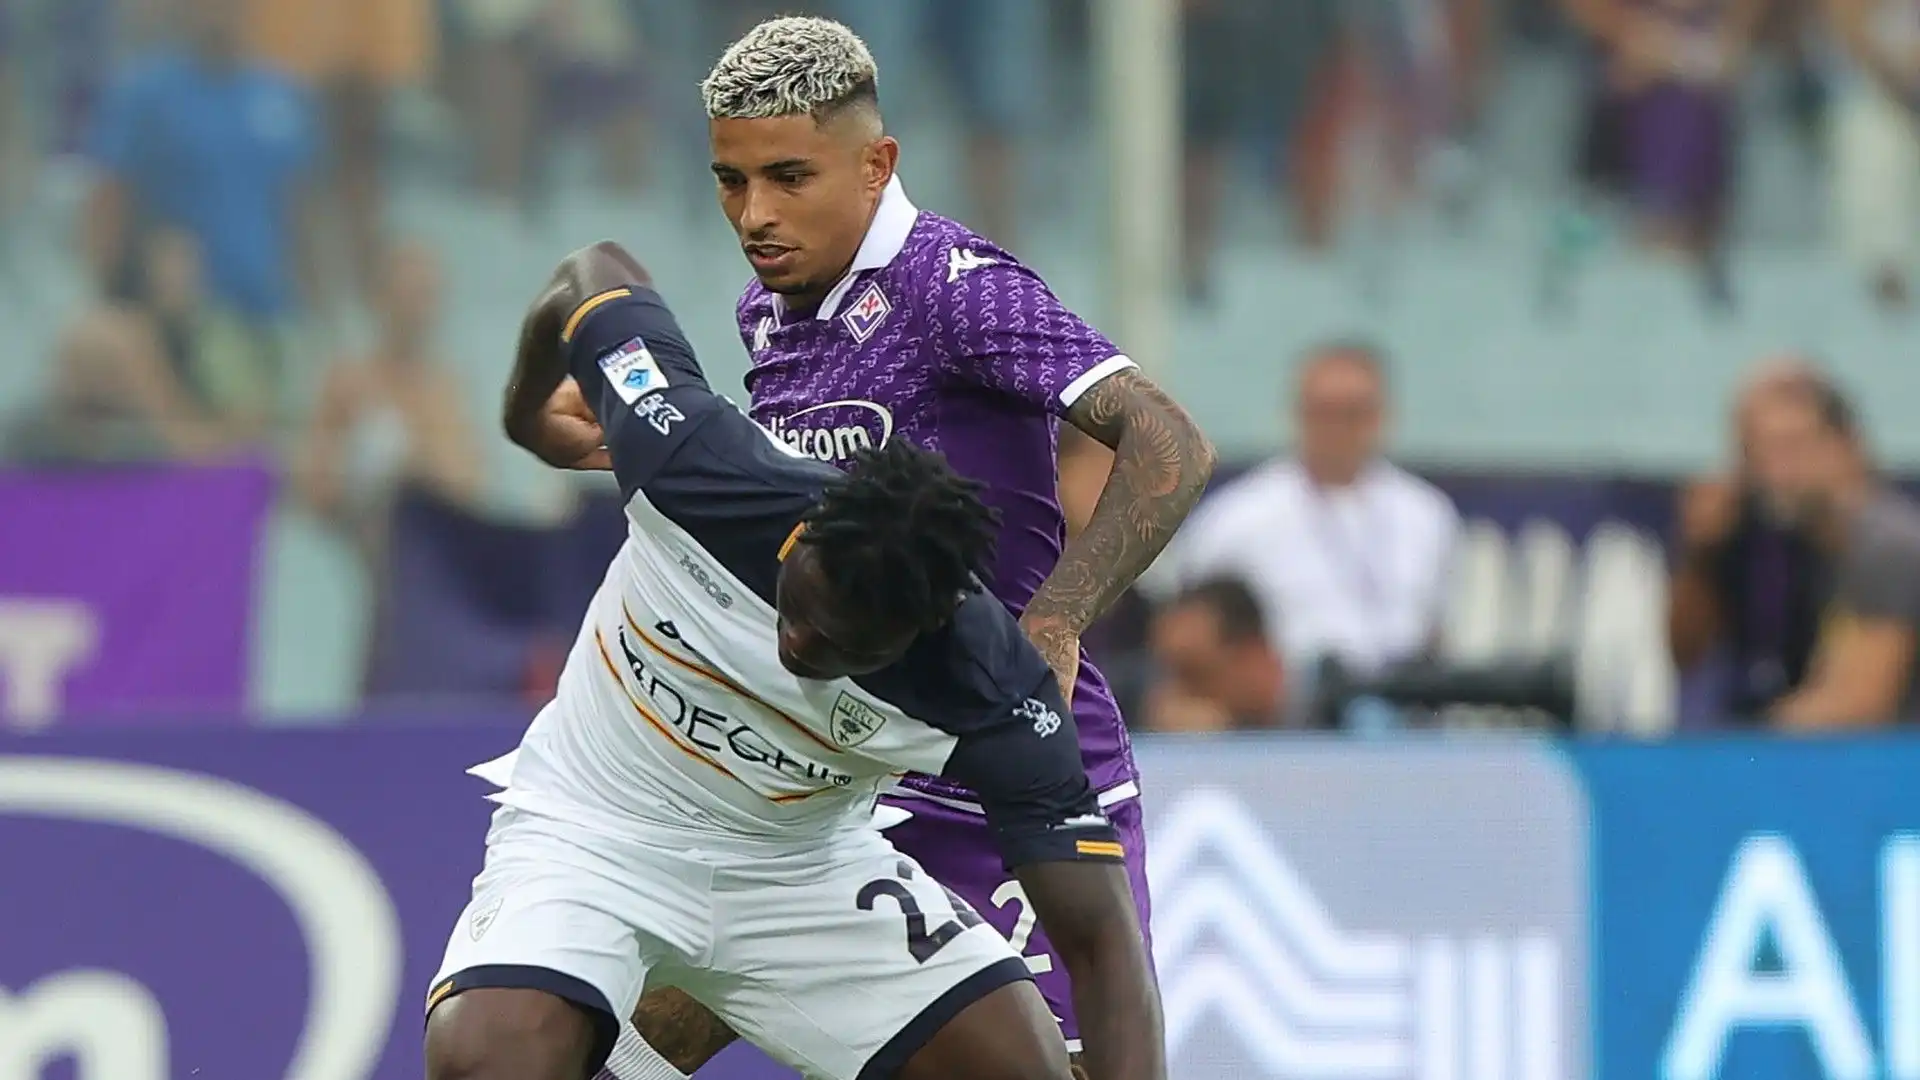 Dodò è approdato alla Fiorentina nel luglio 2022 per circa 15 milioni di euro